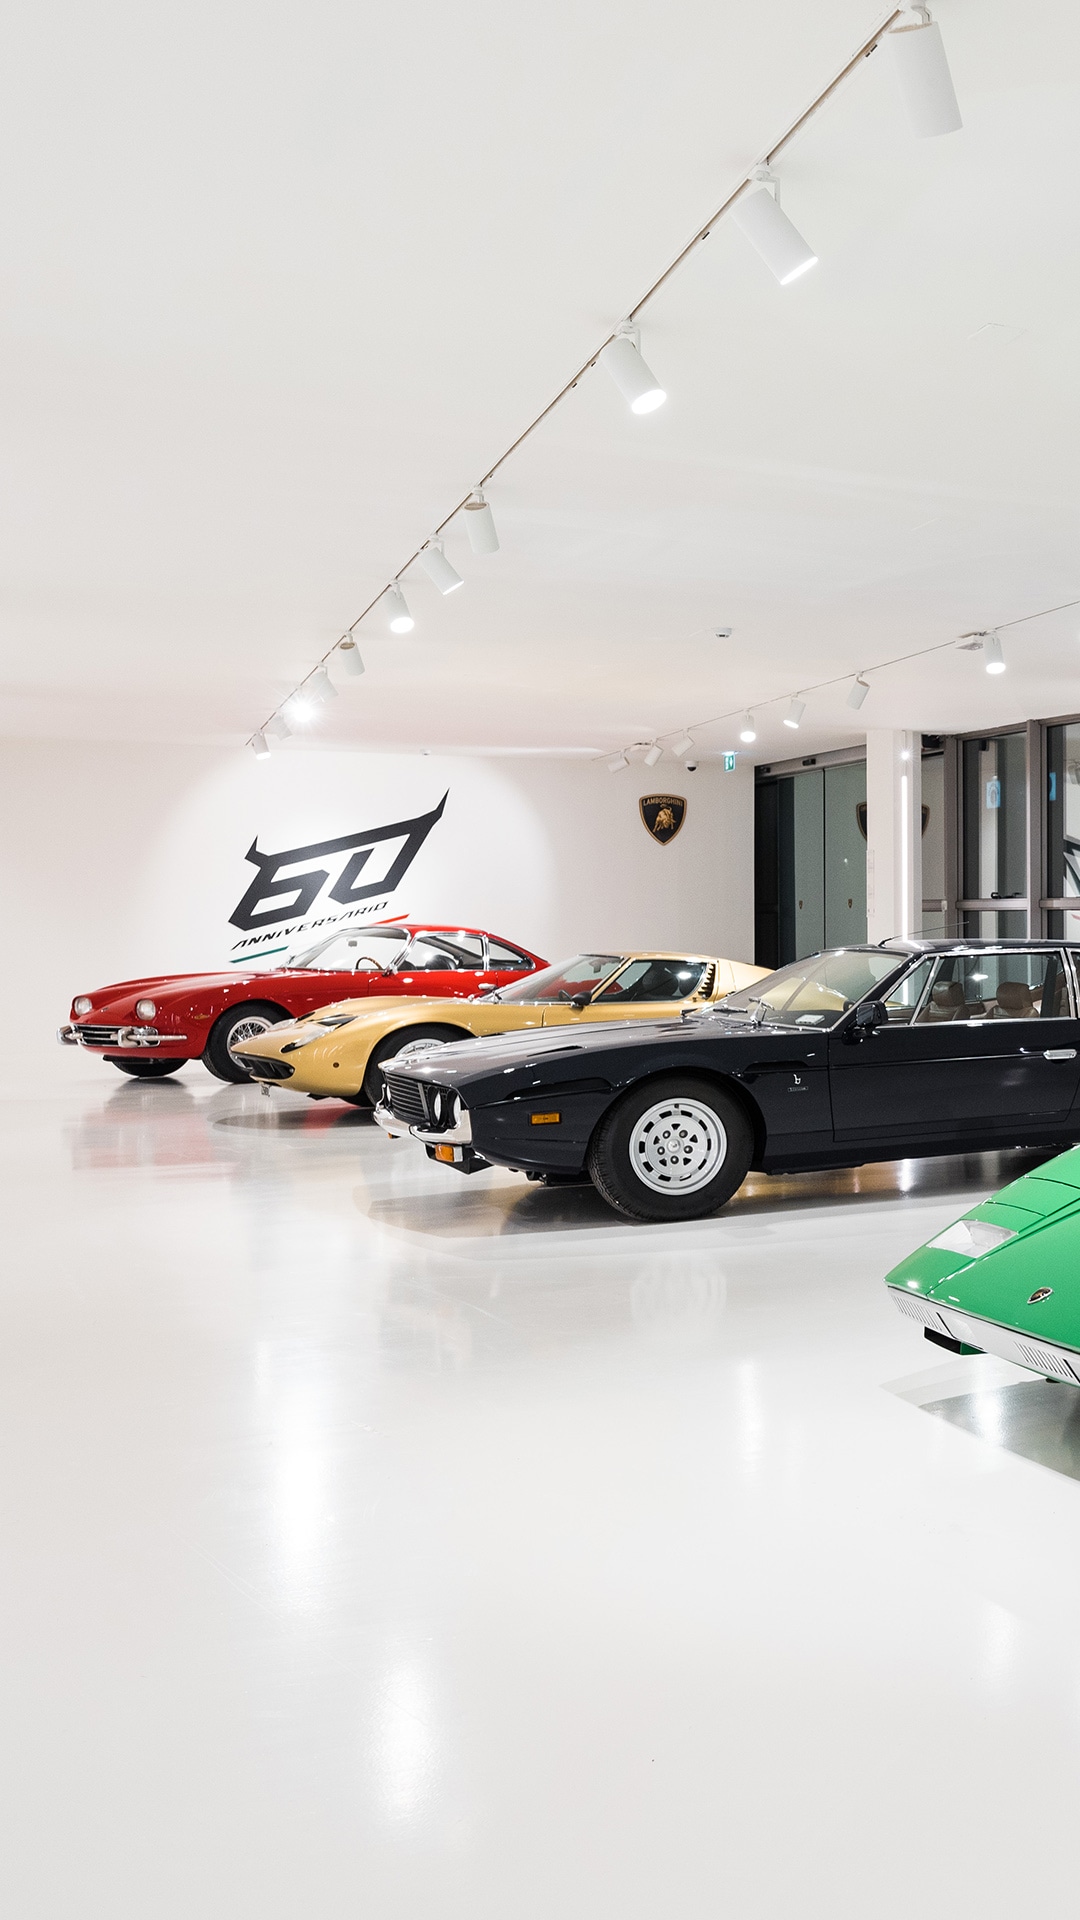 Lamborghini Museum 